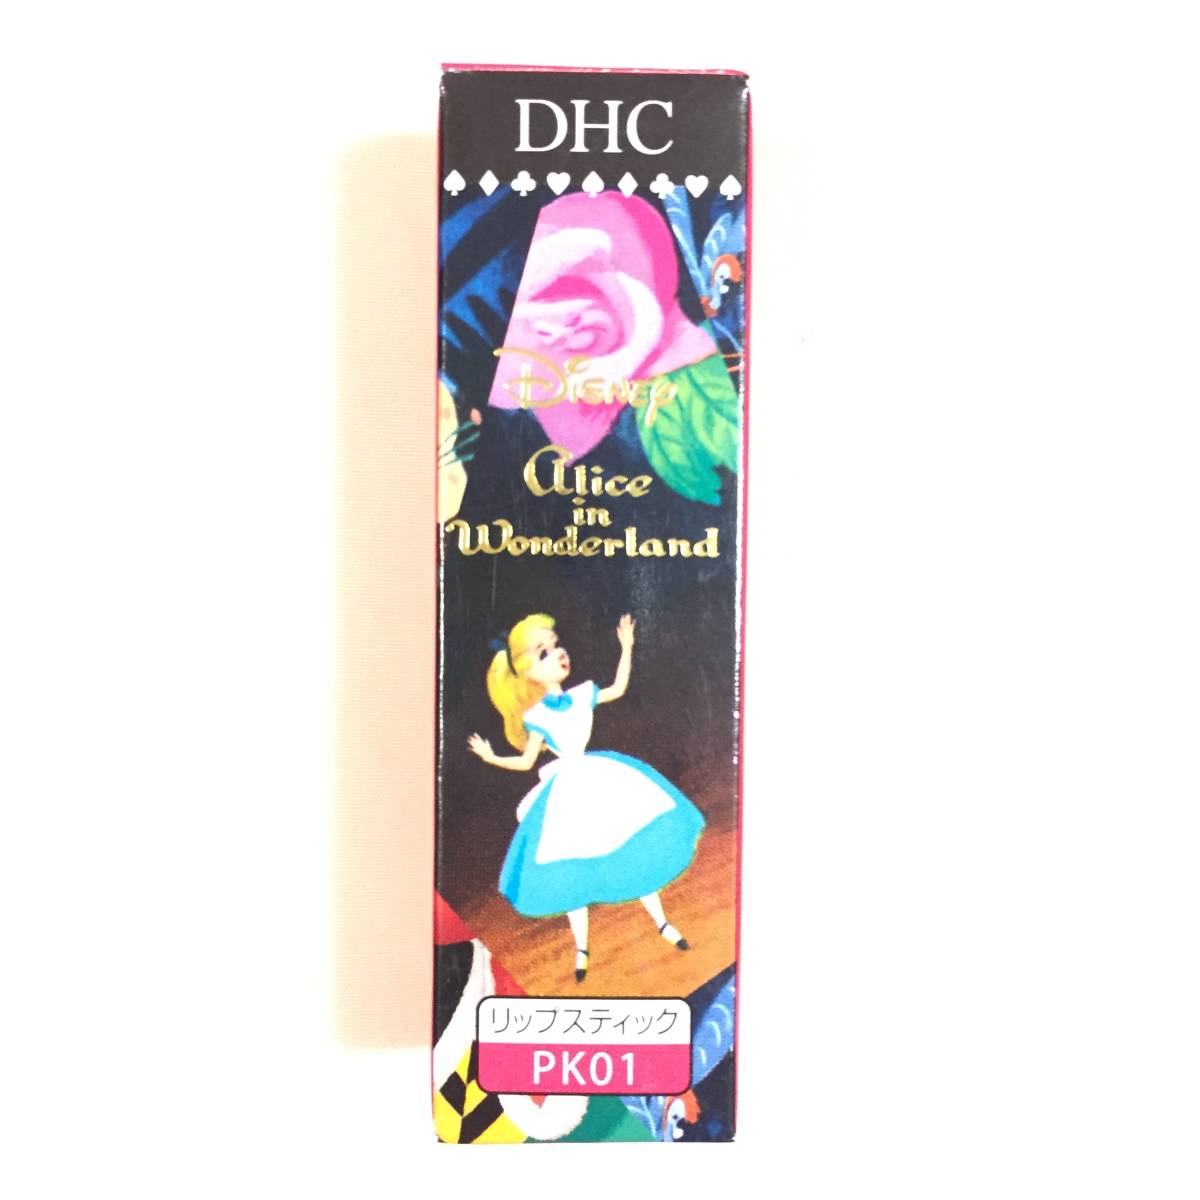 Новая ограниченная ◆ DHC (DHC) Essence в цвете губ Alice PK01 ◆